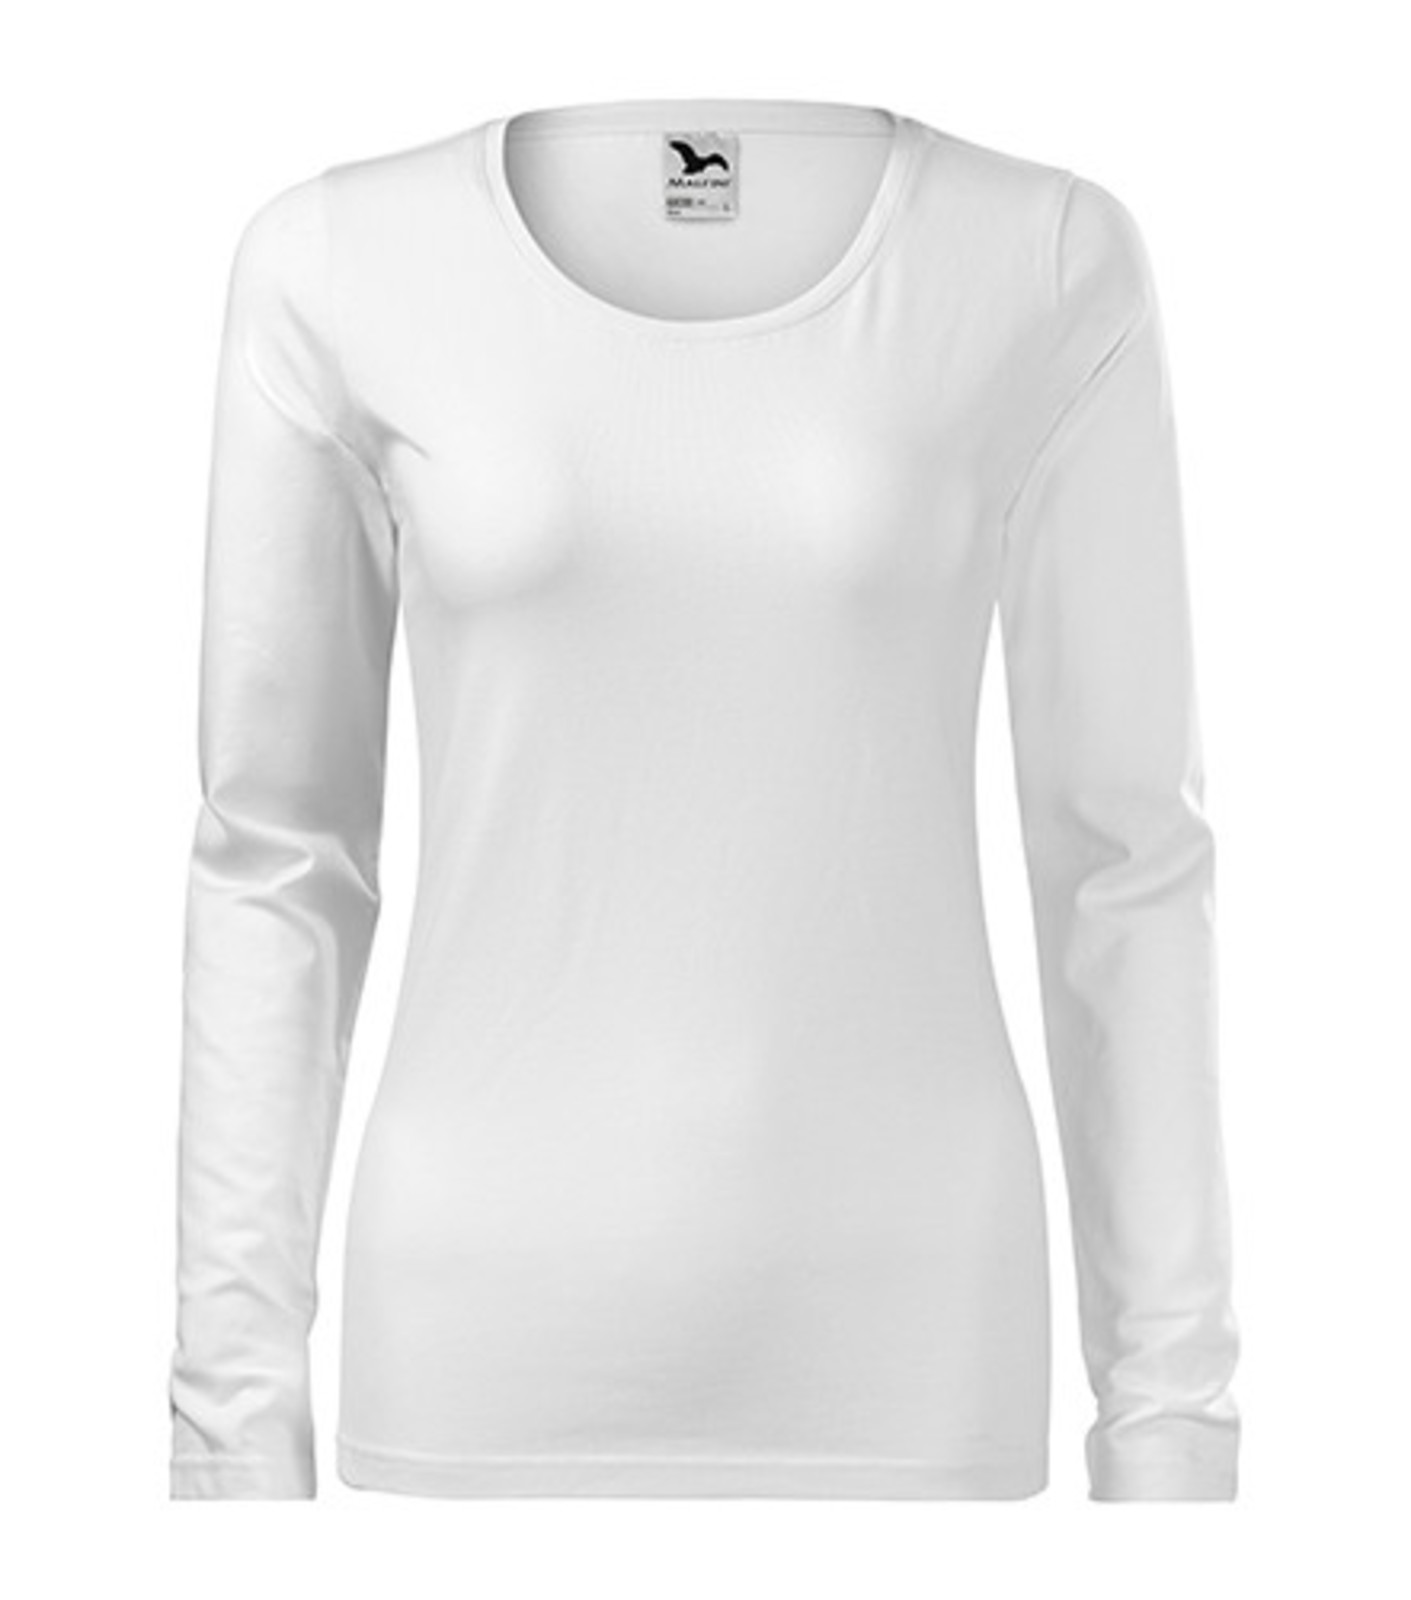 Dámske tričko s dlhým rukávom Adler Slim 139 - veľkosť: M, farba: biela